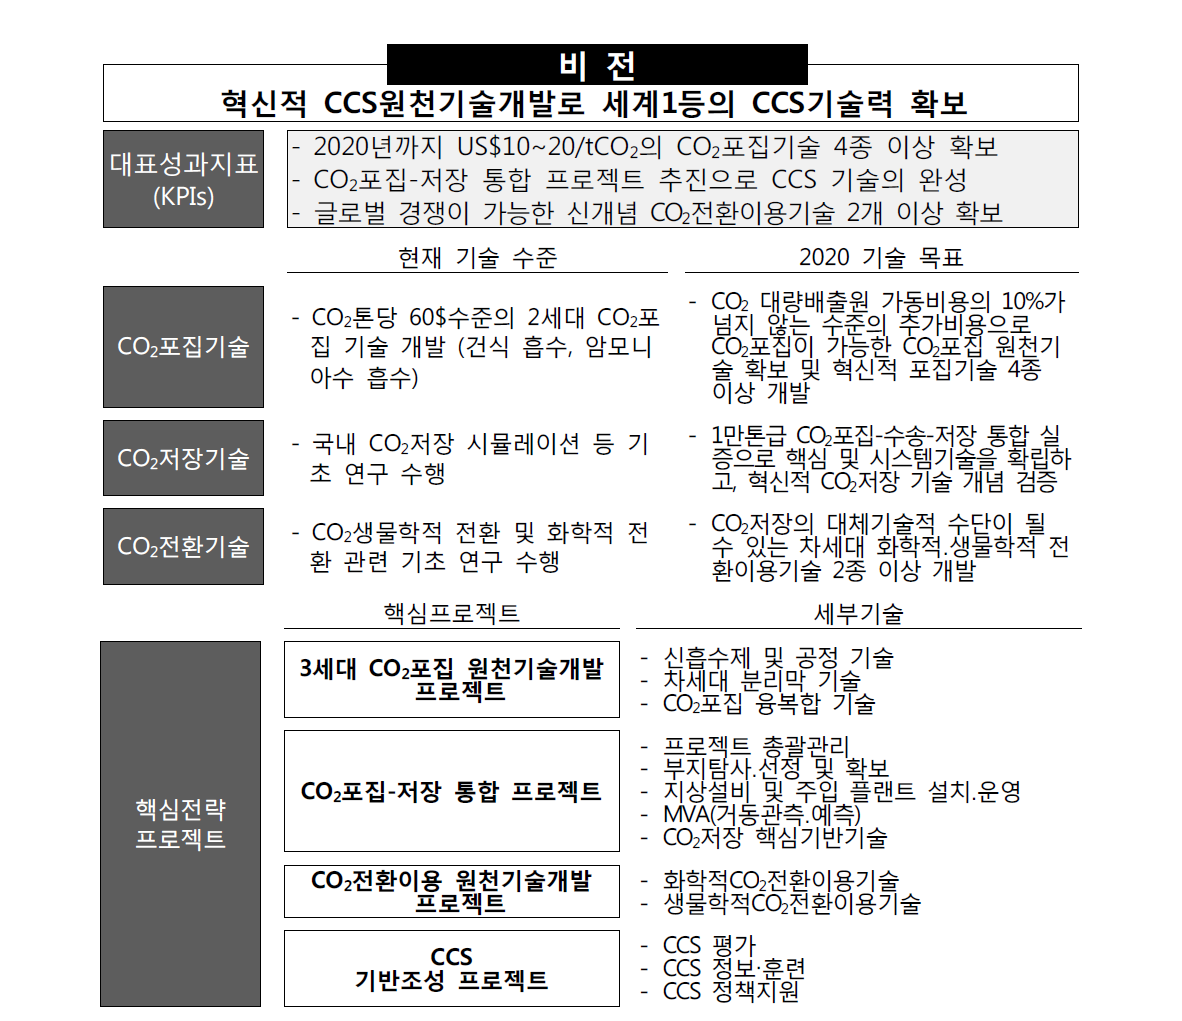 Korea CCS 2020 사업의 비전 및 목표